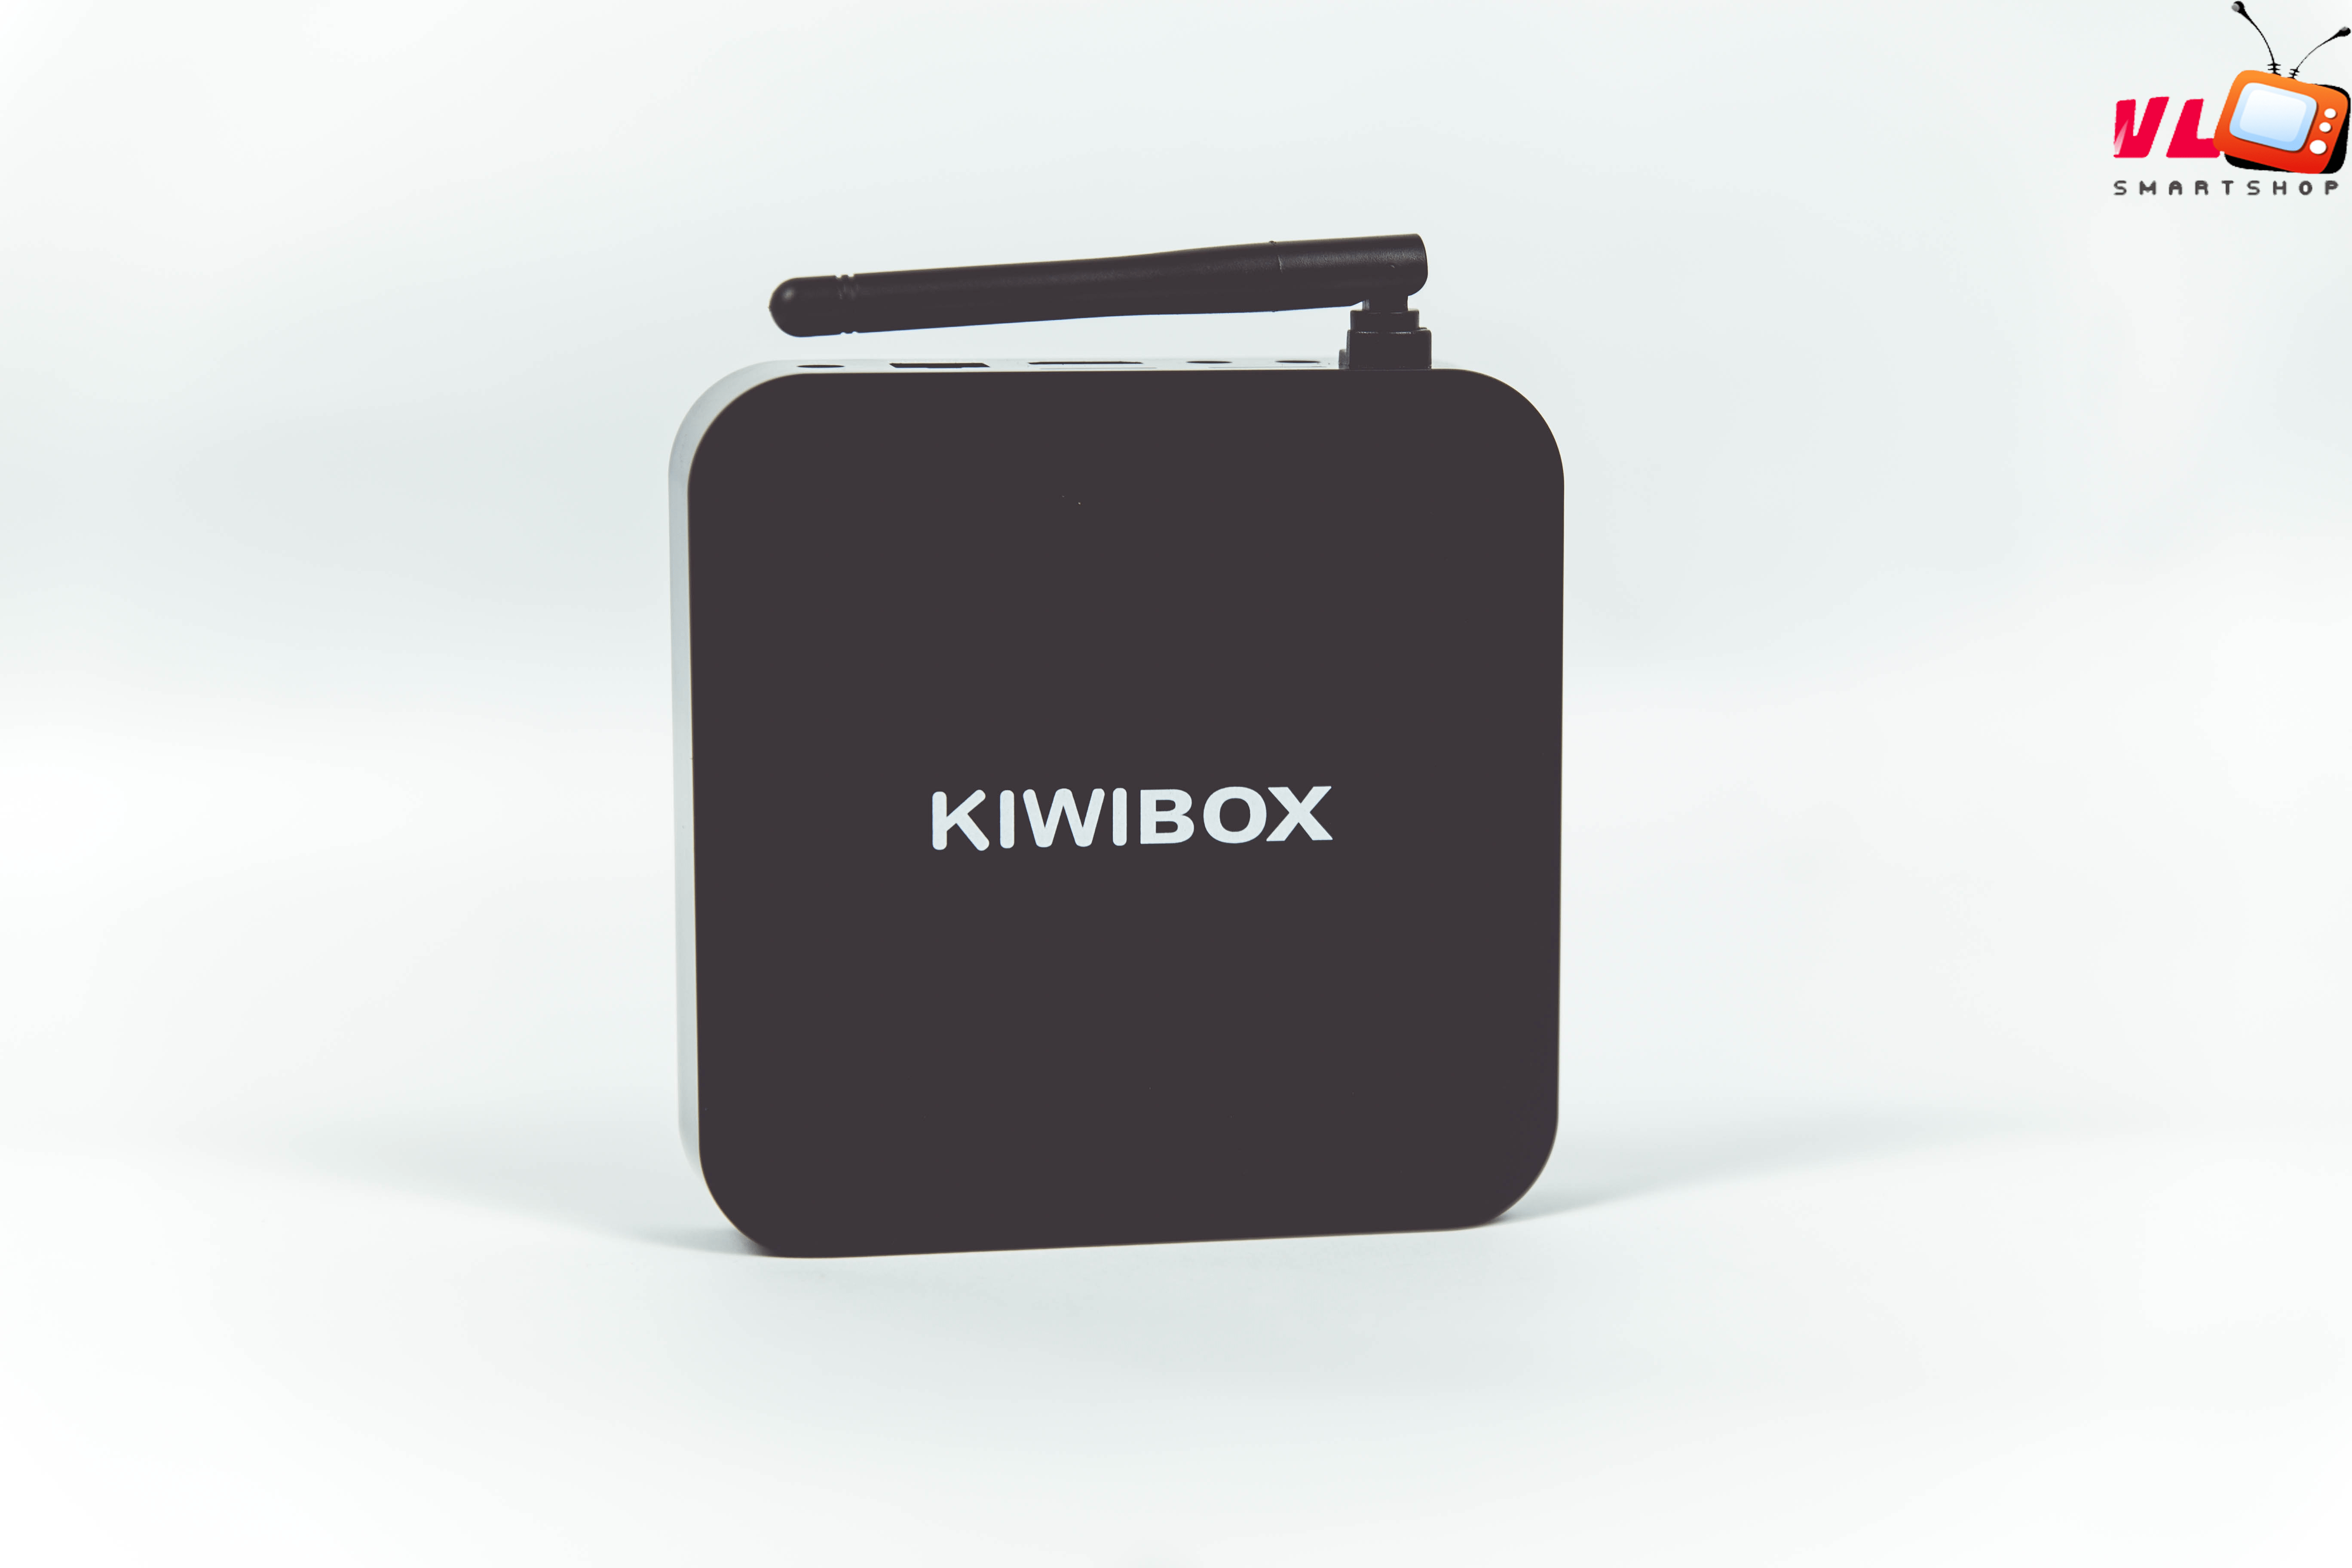 Kiwibox s3